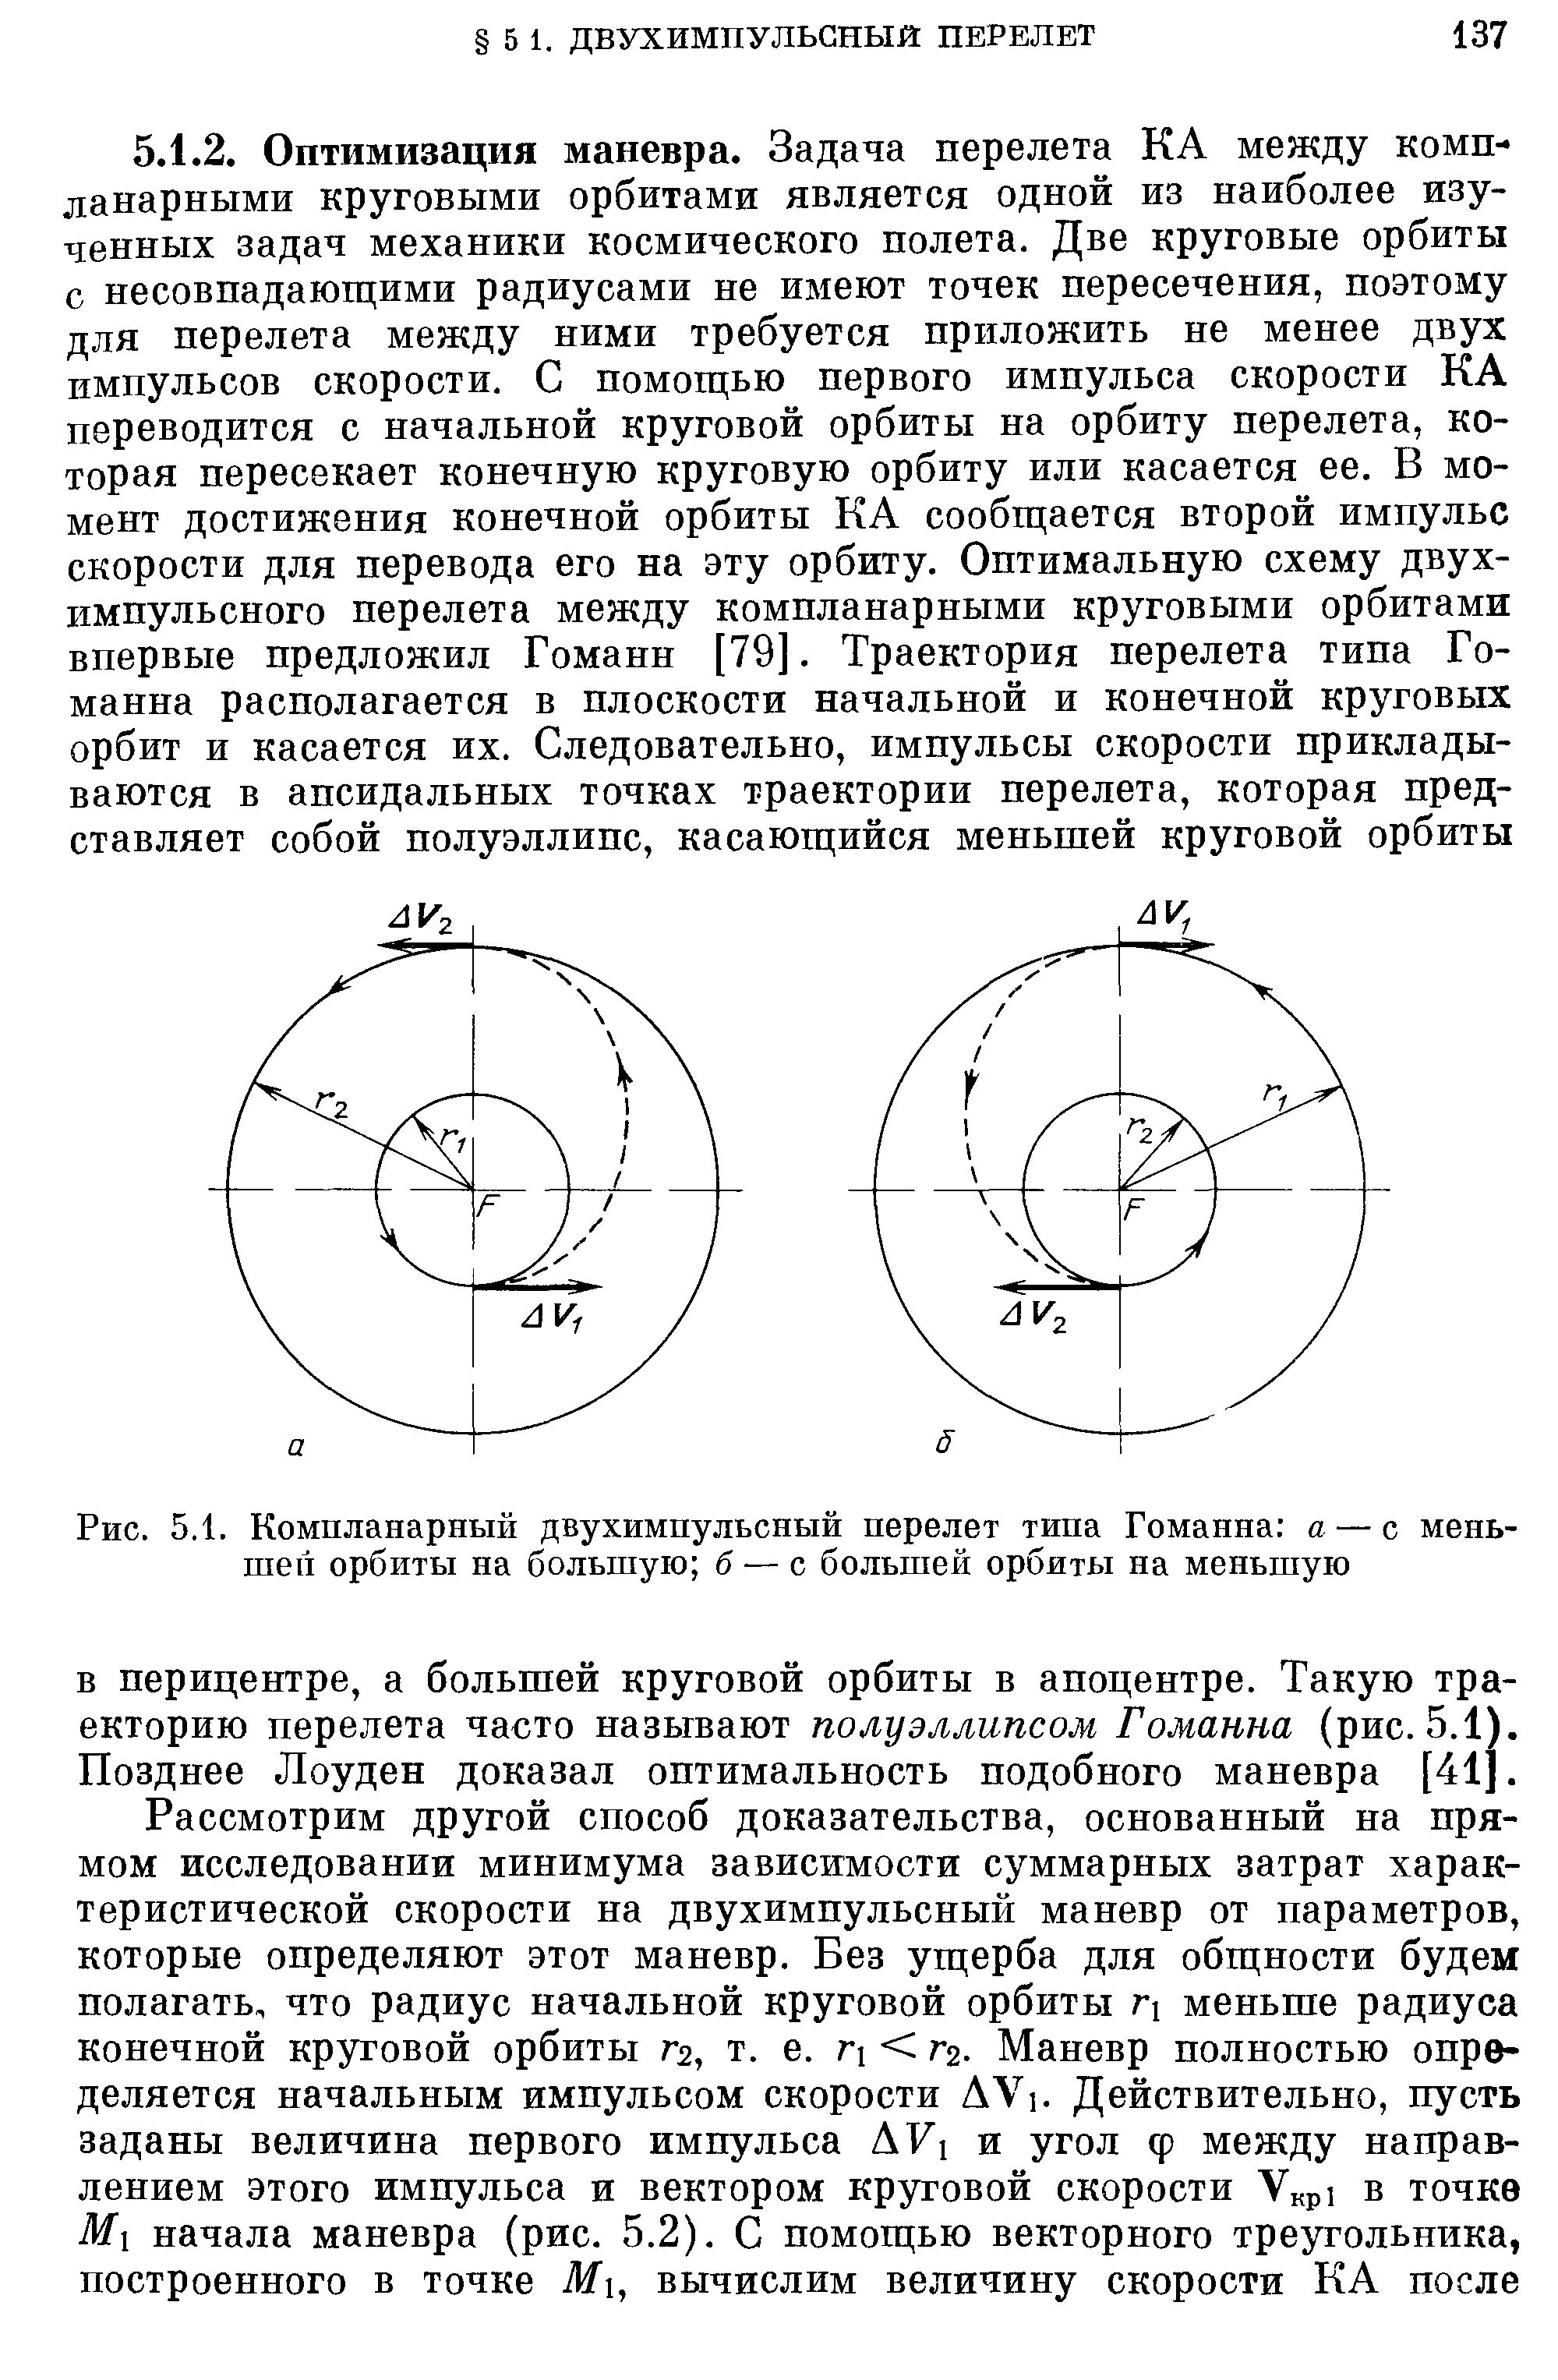 Рис. 5.1. Компланарный двухимпульсный перелет типа Гоманна а — с меньшей орбиты на большую б — с большей орбиты на меньшую
